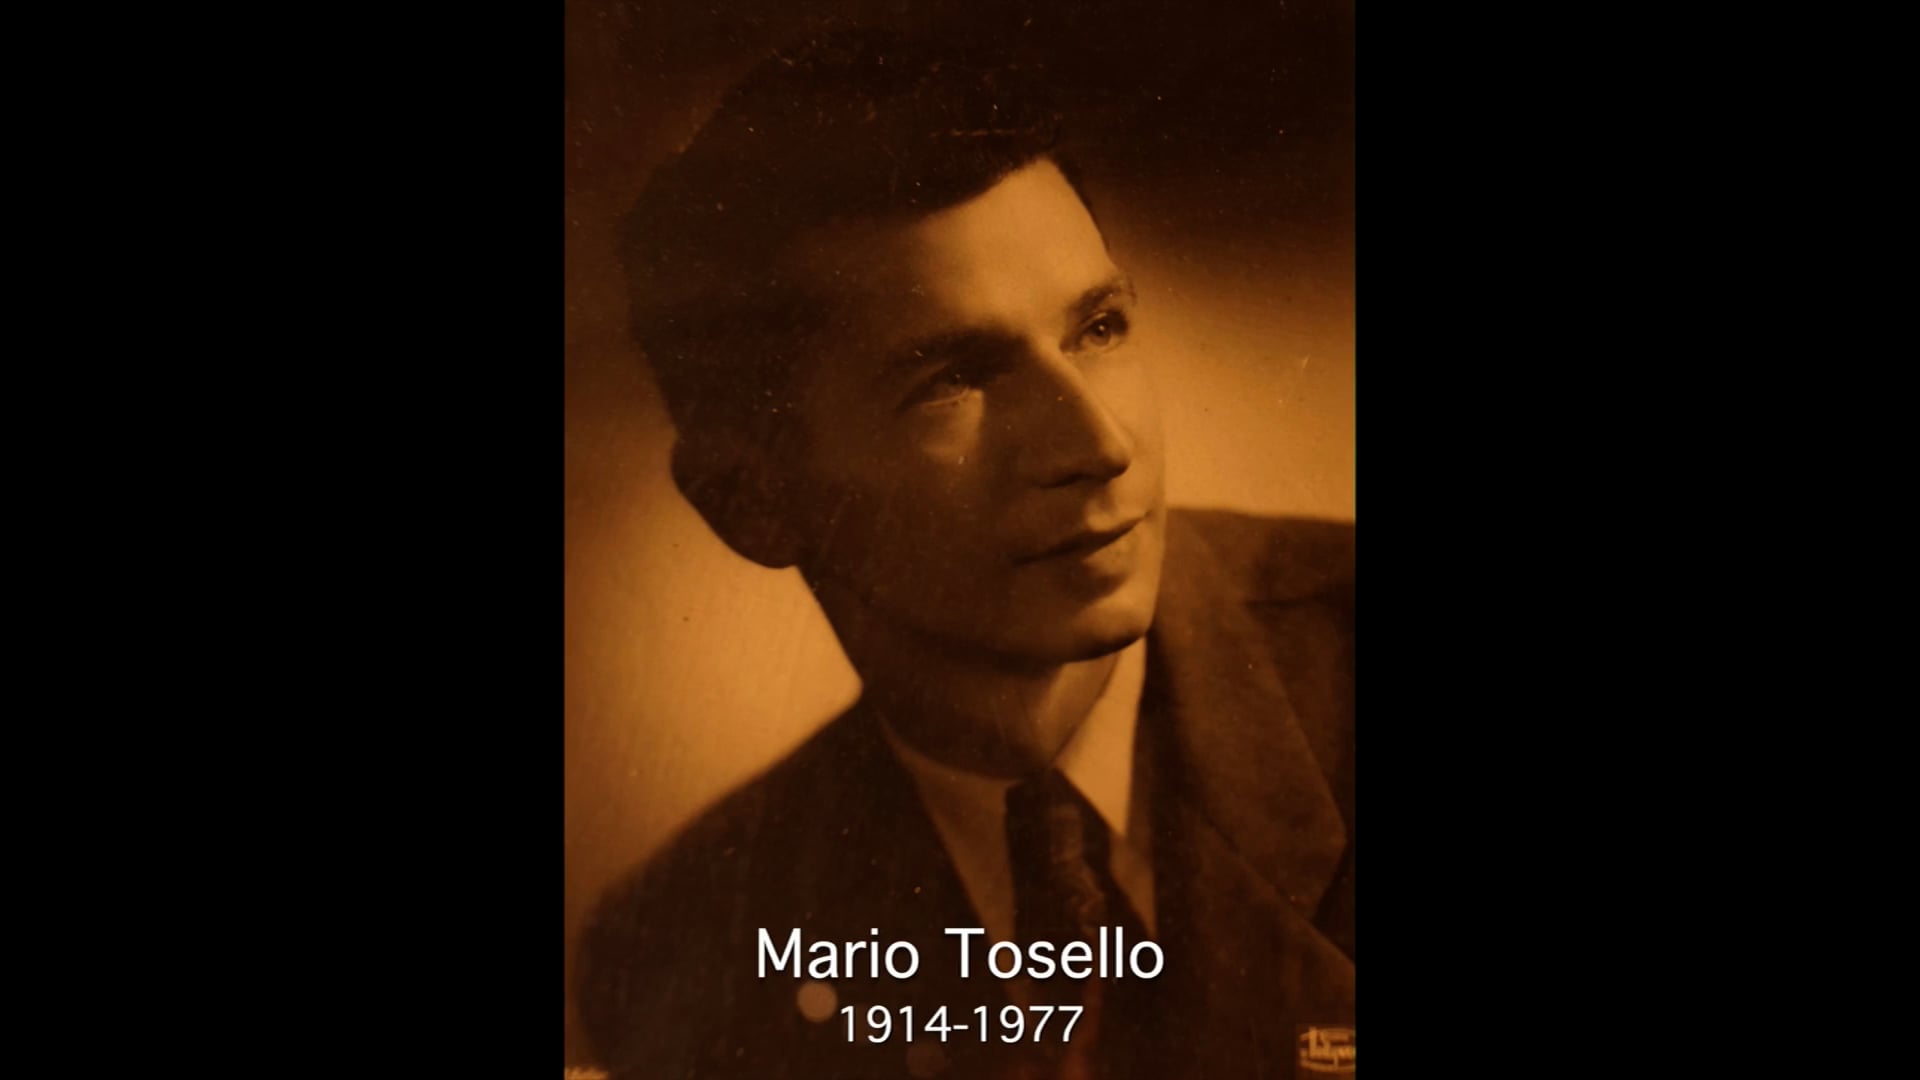 Mario Tosello